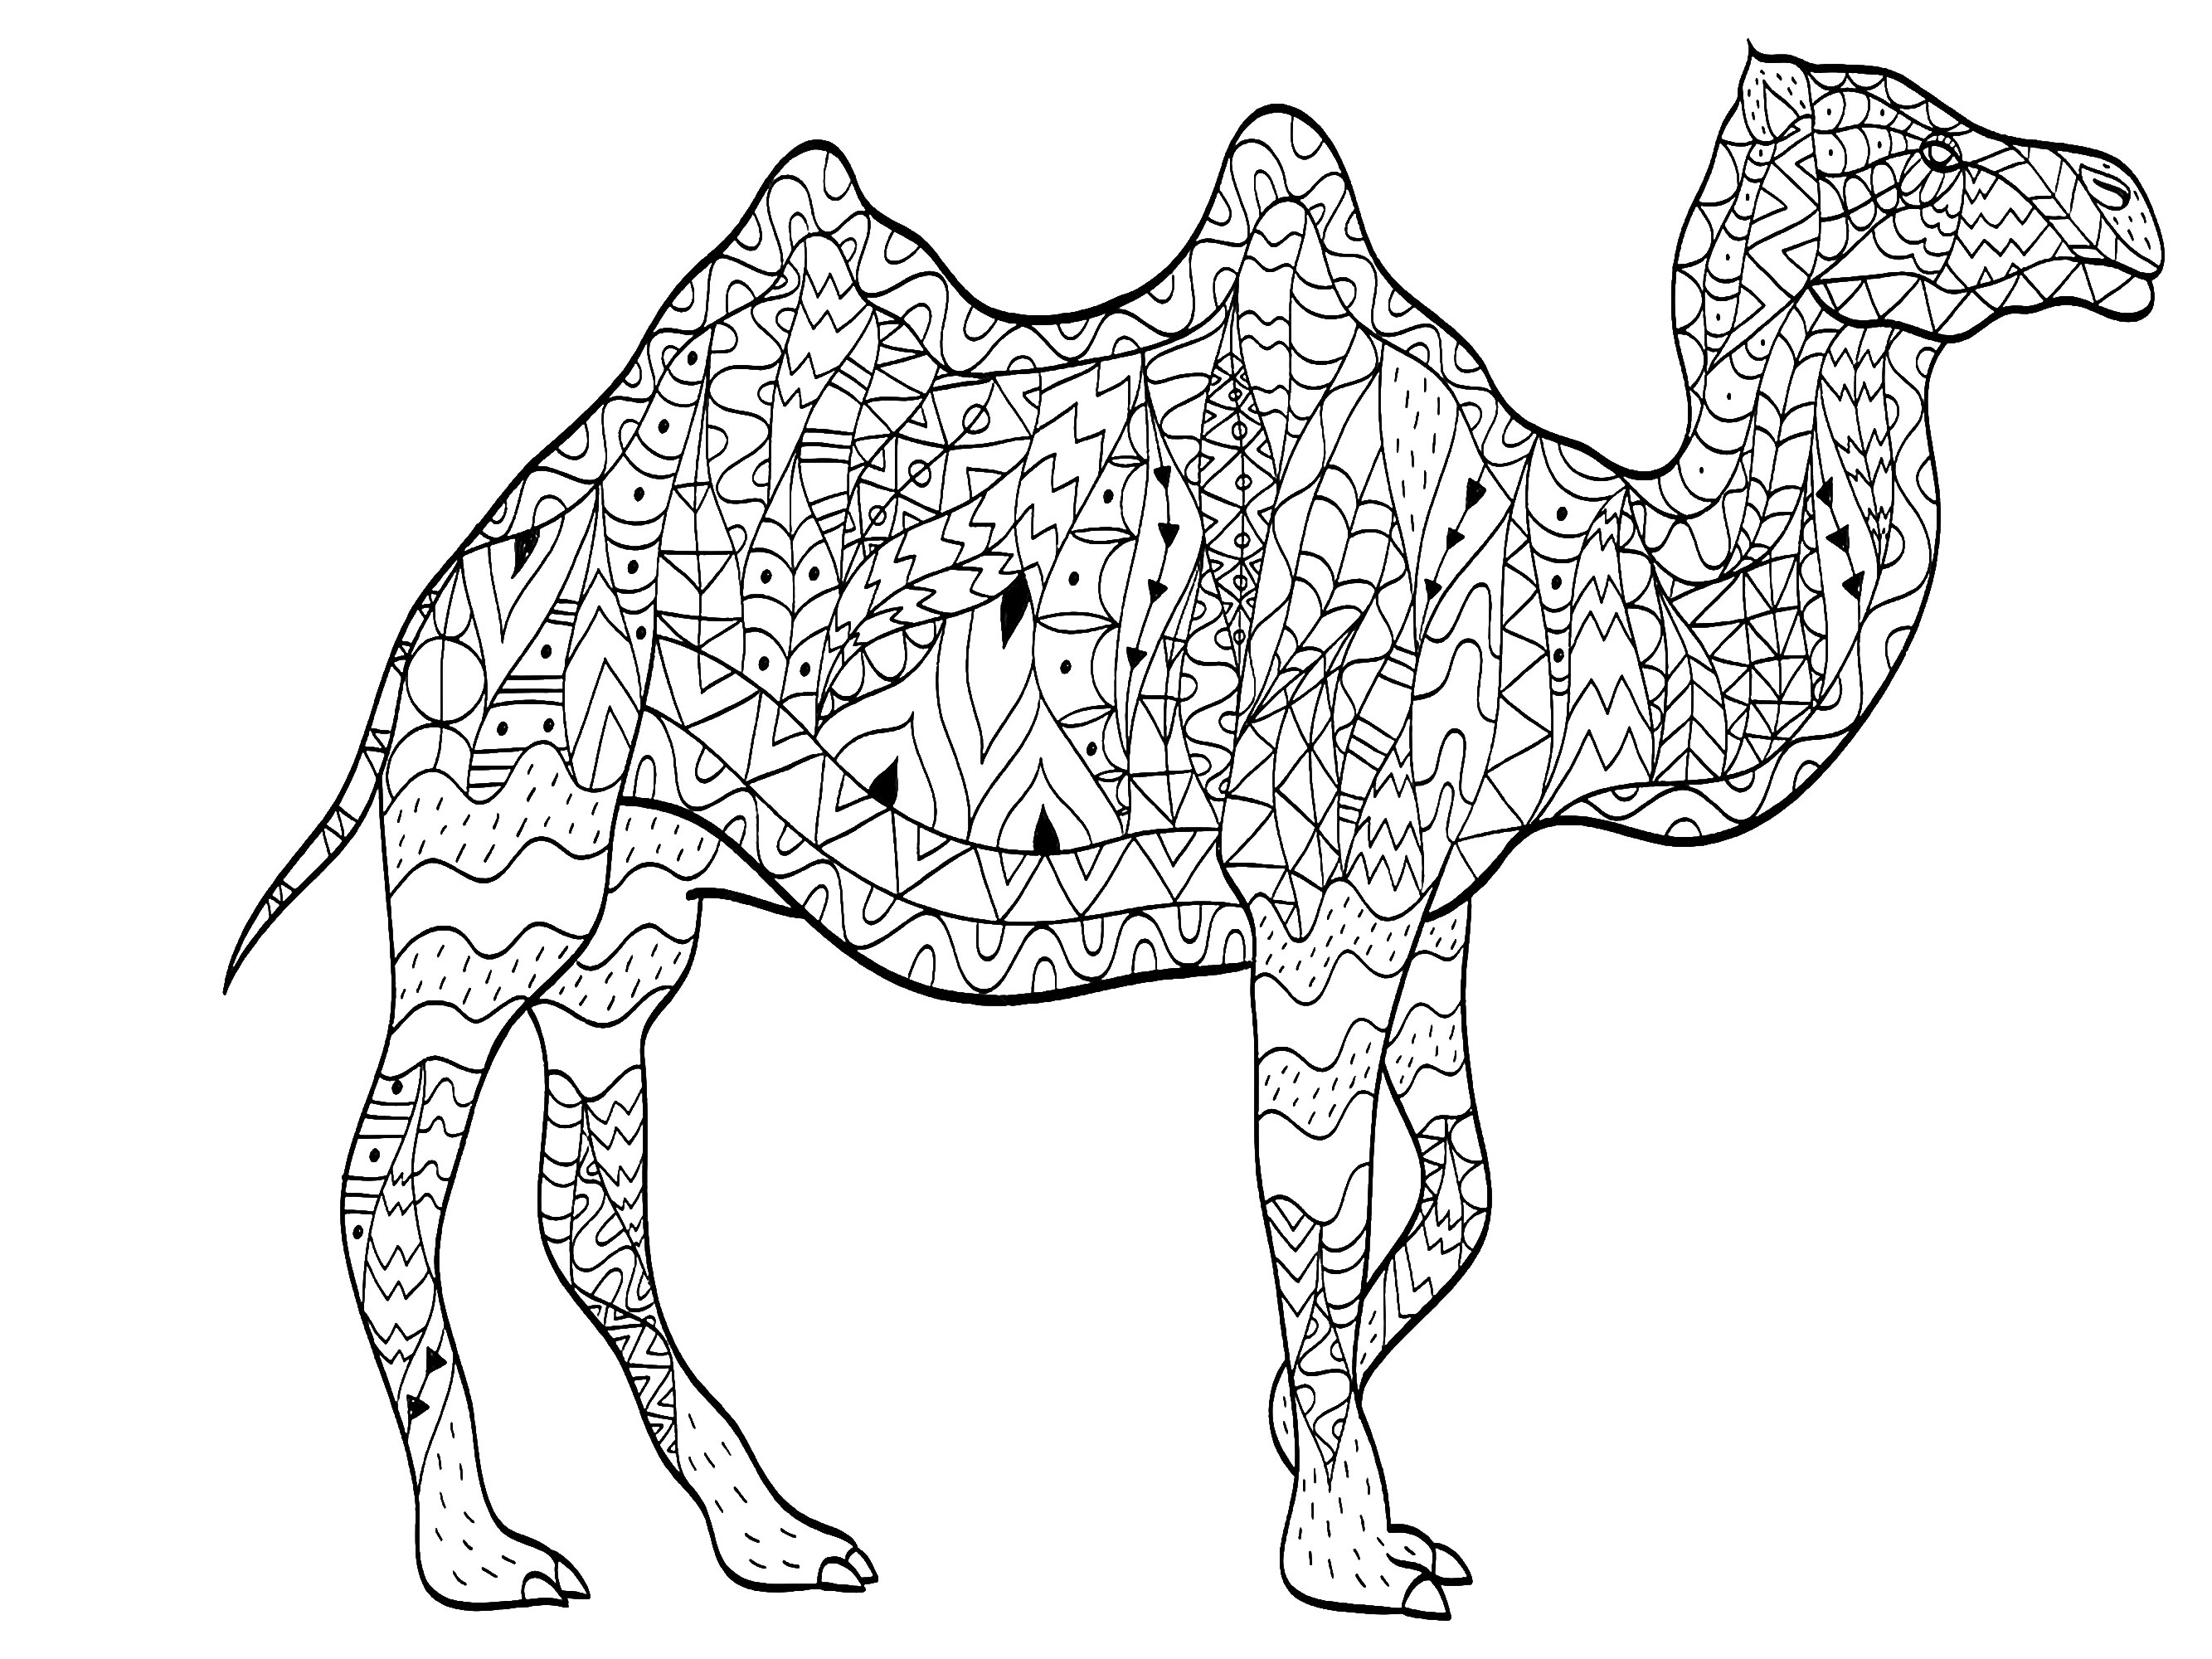 Um camelo majestoso desenhado com padrões variados e originais, Artista : Viktoriia Panchenko   Fonte : 123rf